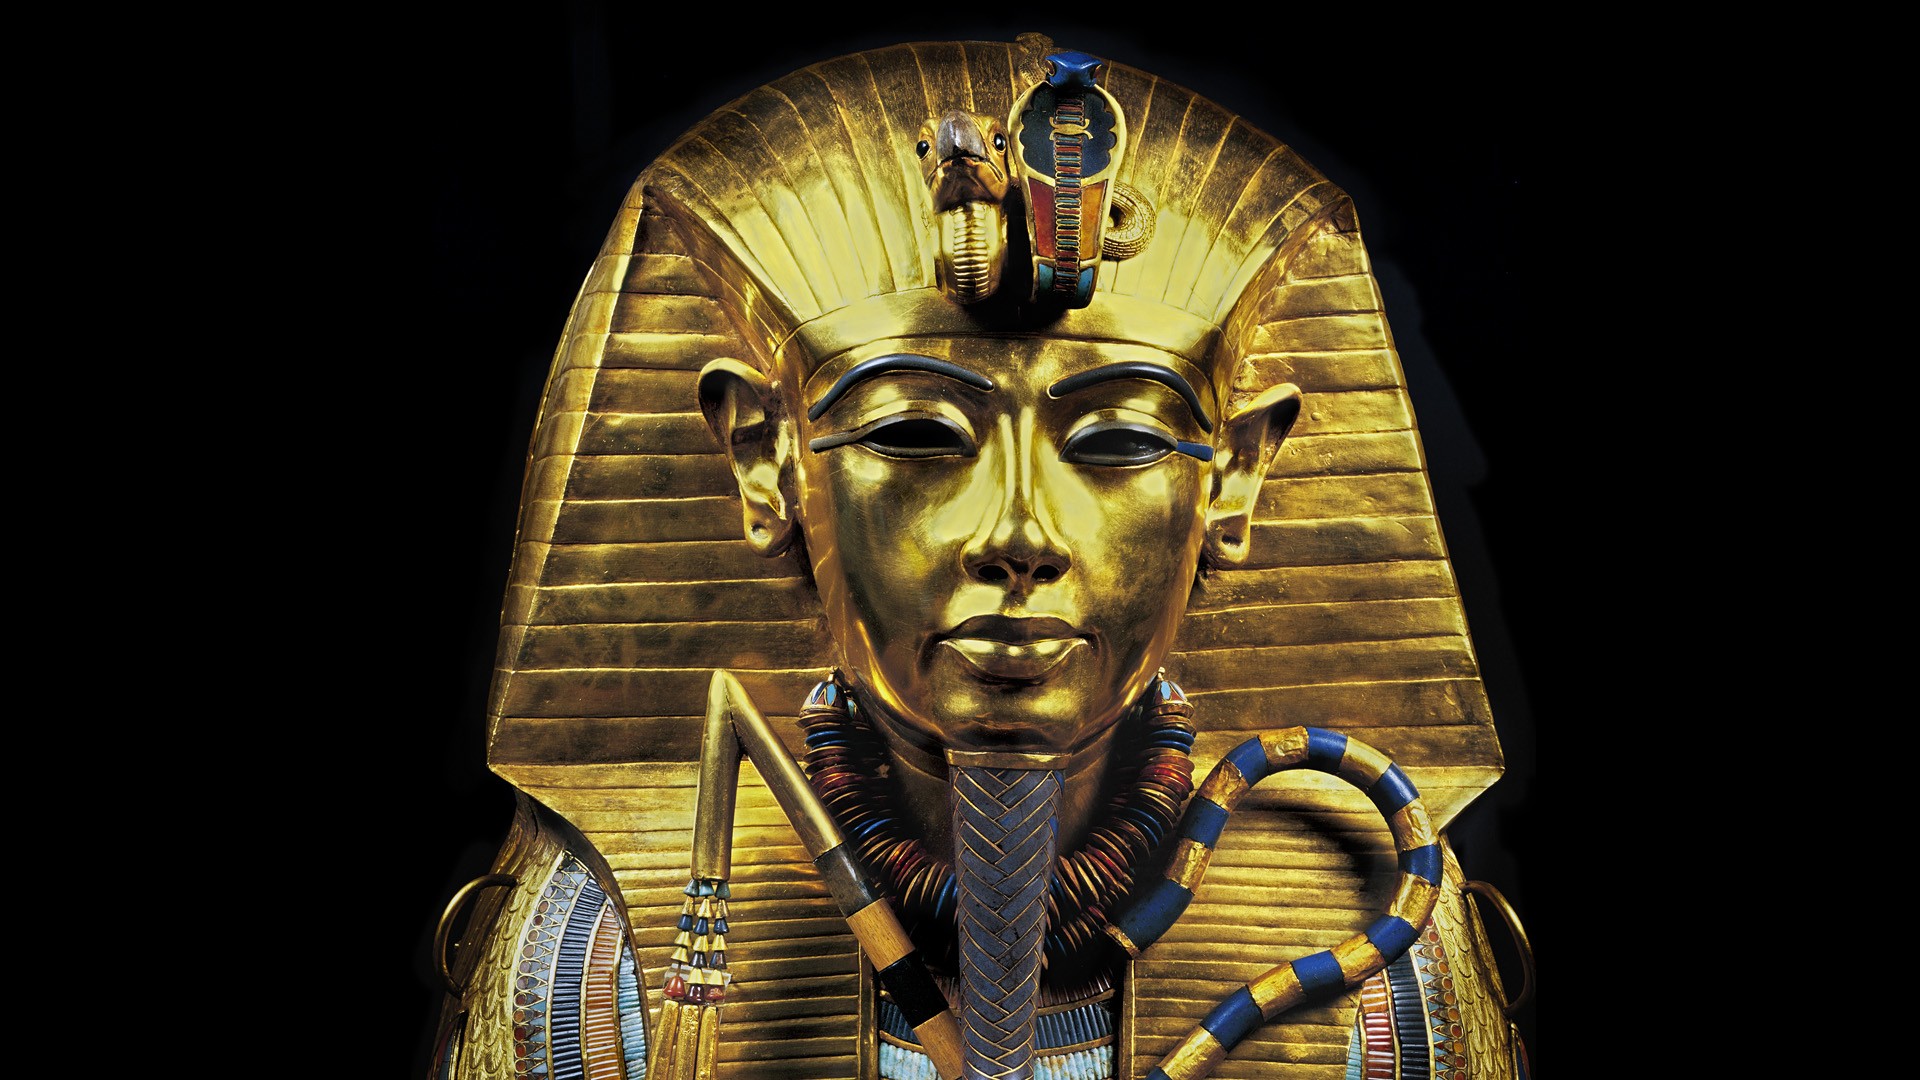 Antika hälsoprinciper för 2000-talet: Lärdomar från Faraonerna